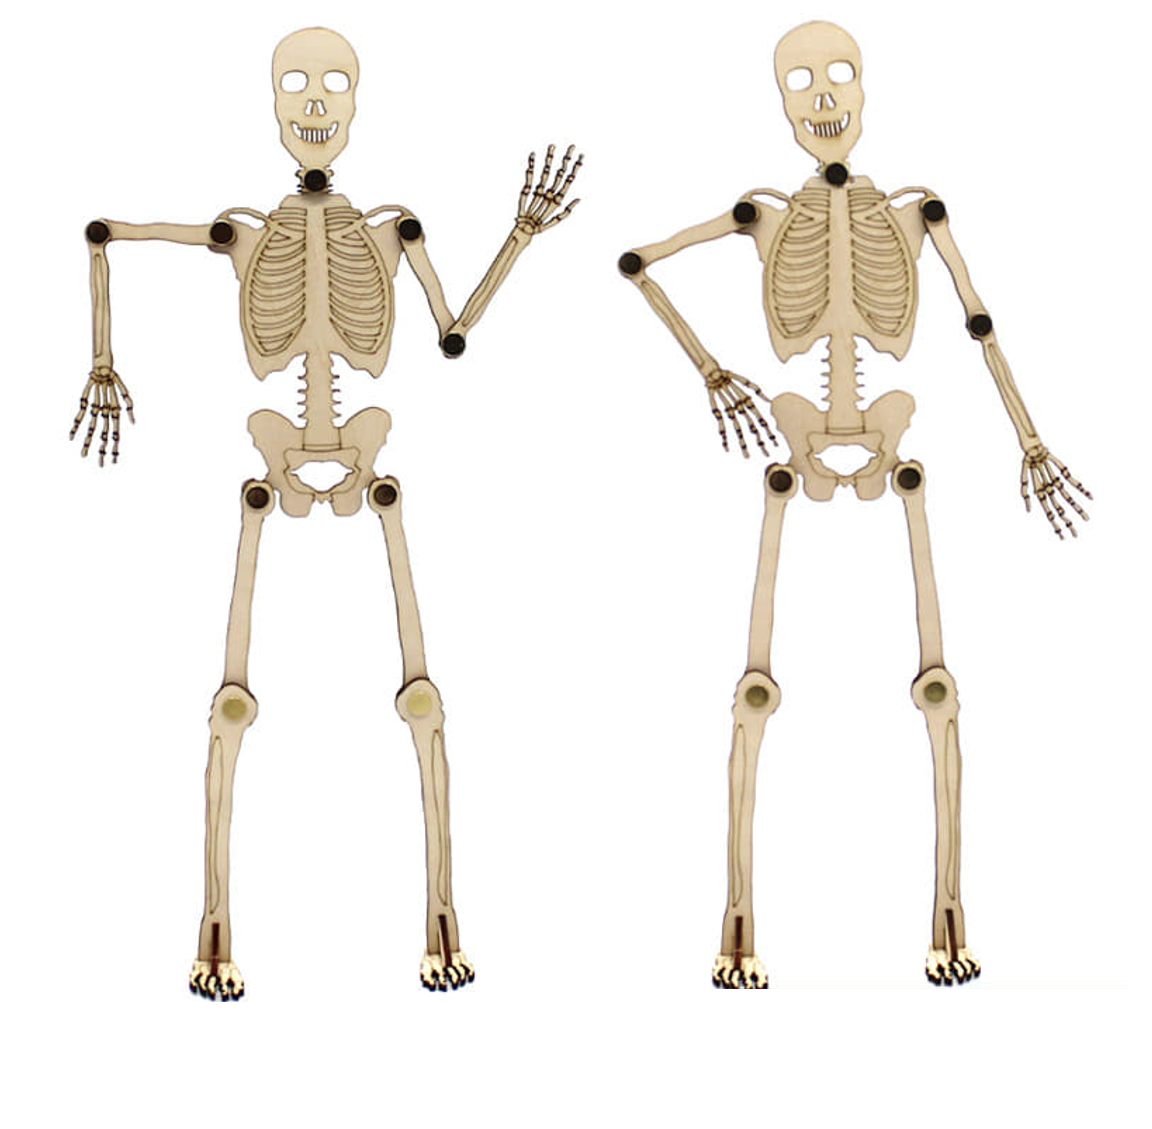 Mô hình bộ xương người tạo dáng điệu đà, không dành cho yếu vía ...